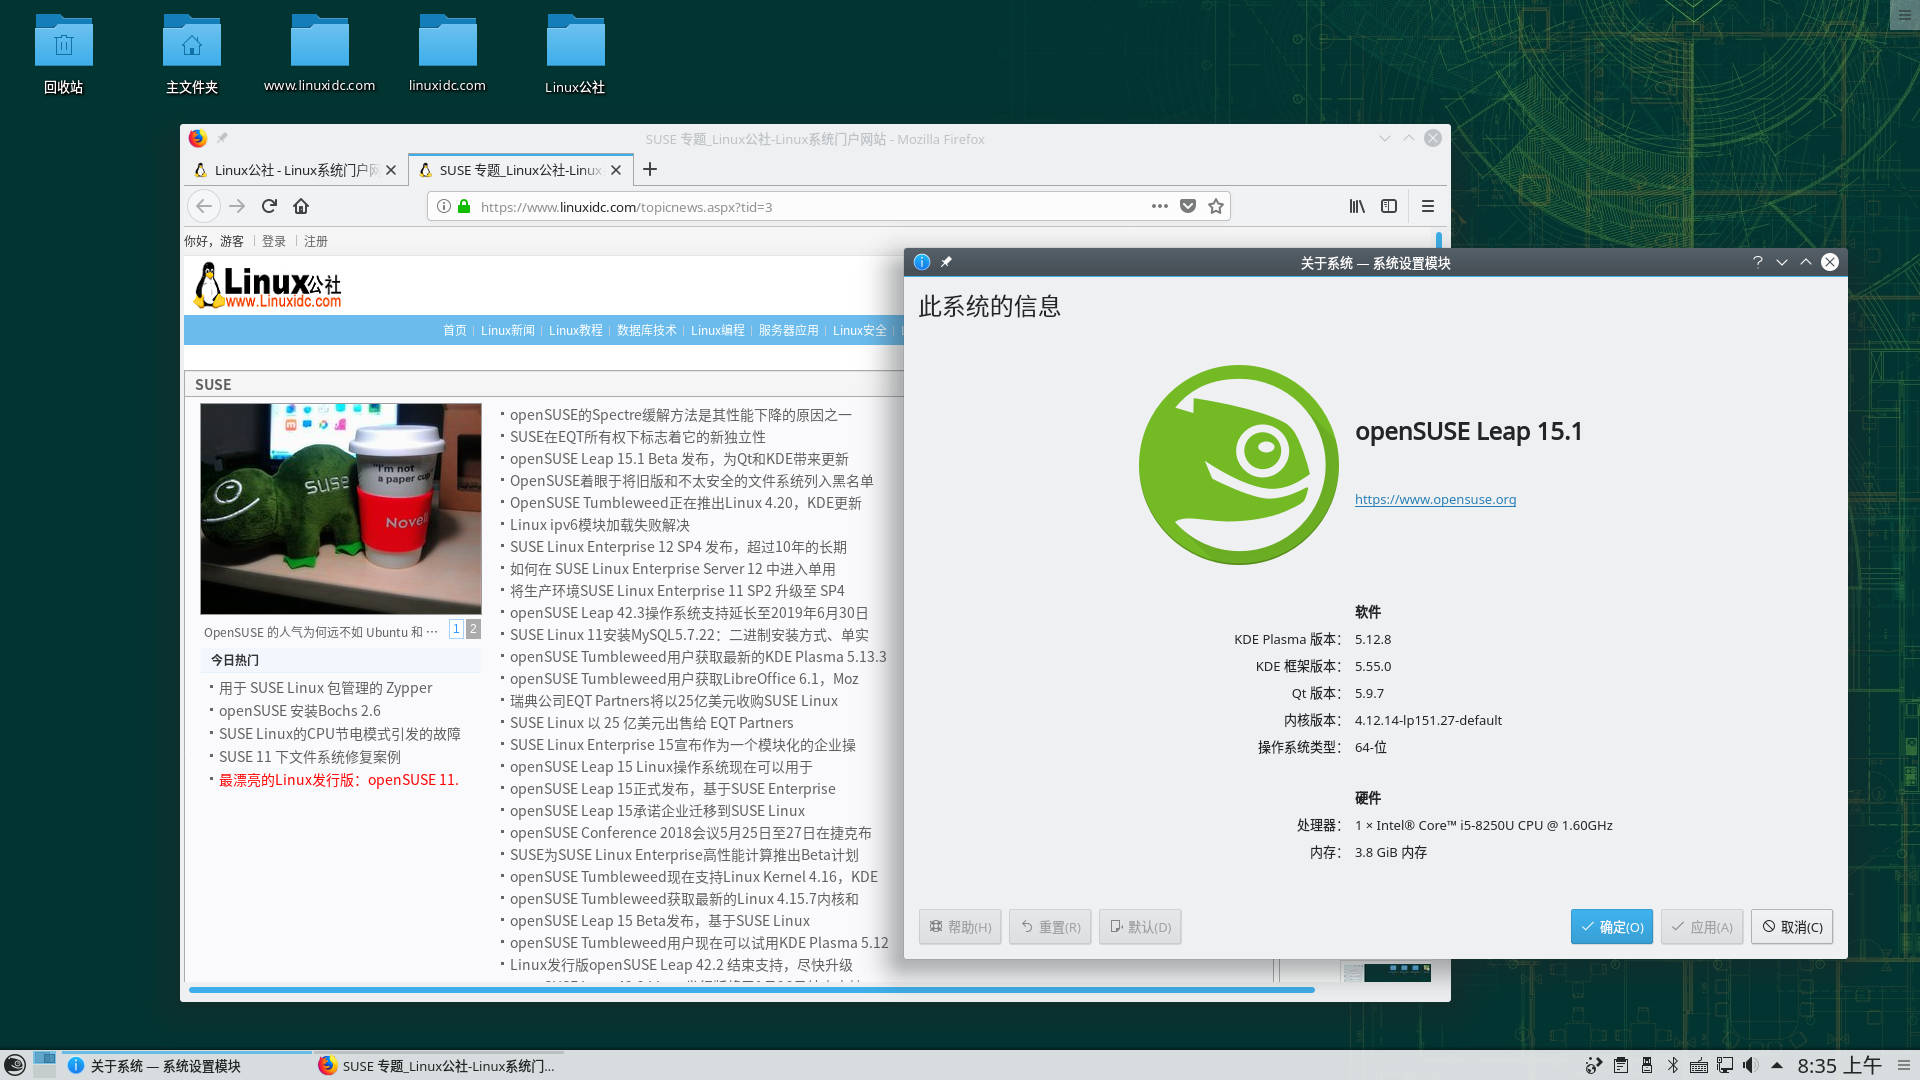 openSUSE Leap 15.1正式发布，基于SUSE Linux Enterprise 15 